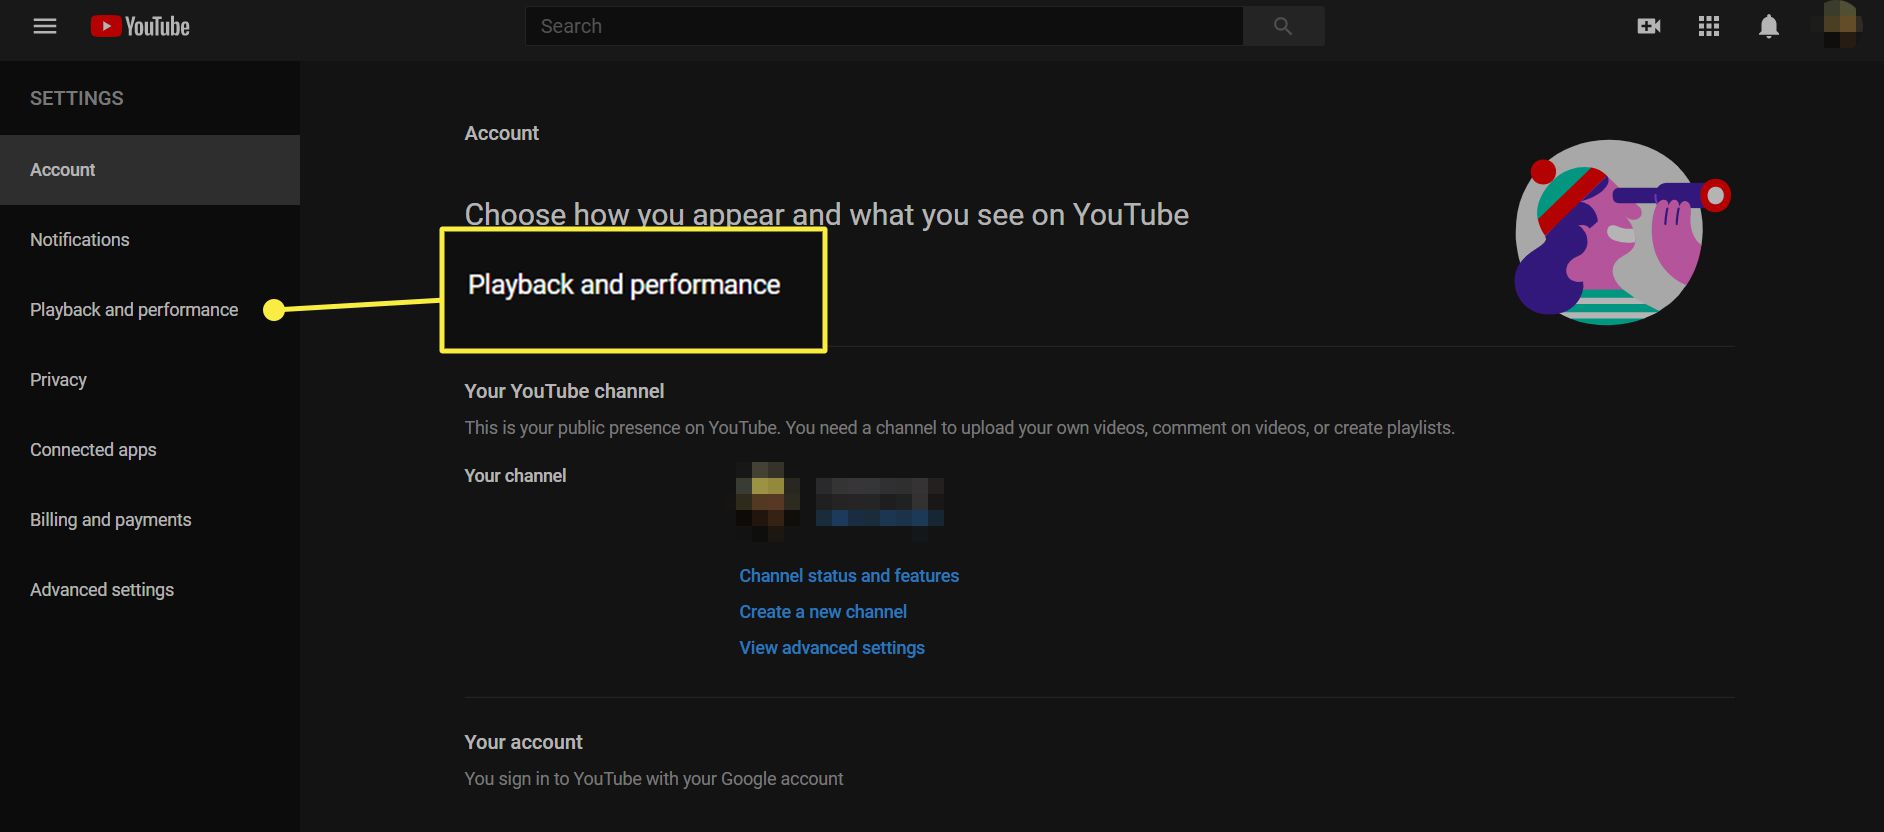 YouTuben asetusvaihtoehdot, joissa Toisto ja saavutukset korostettuina.